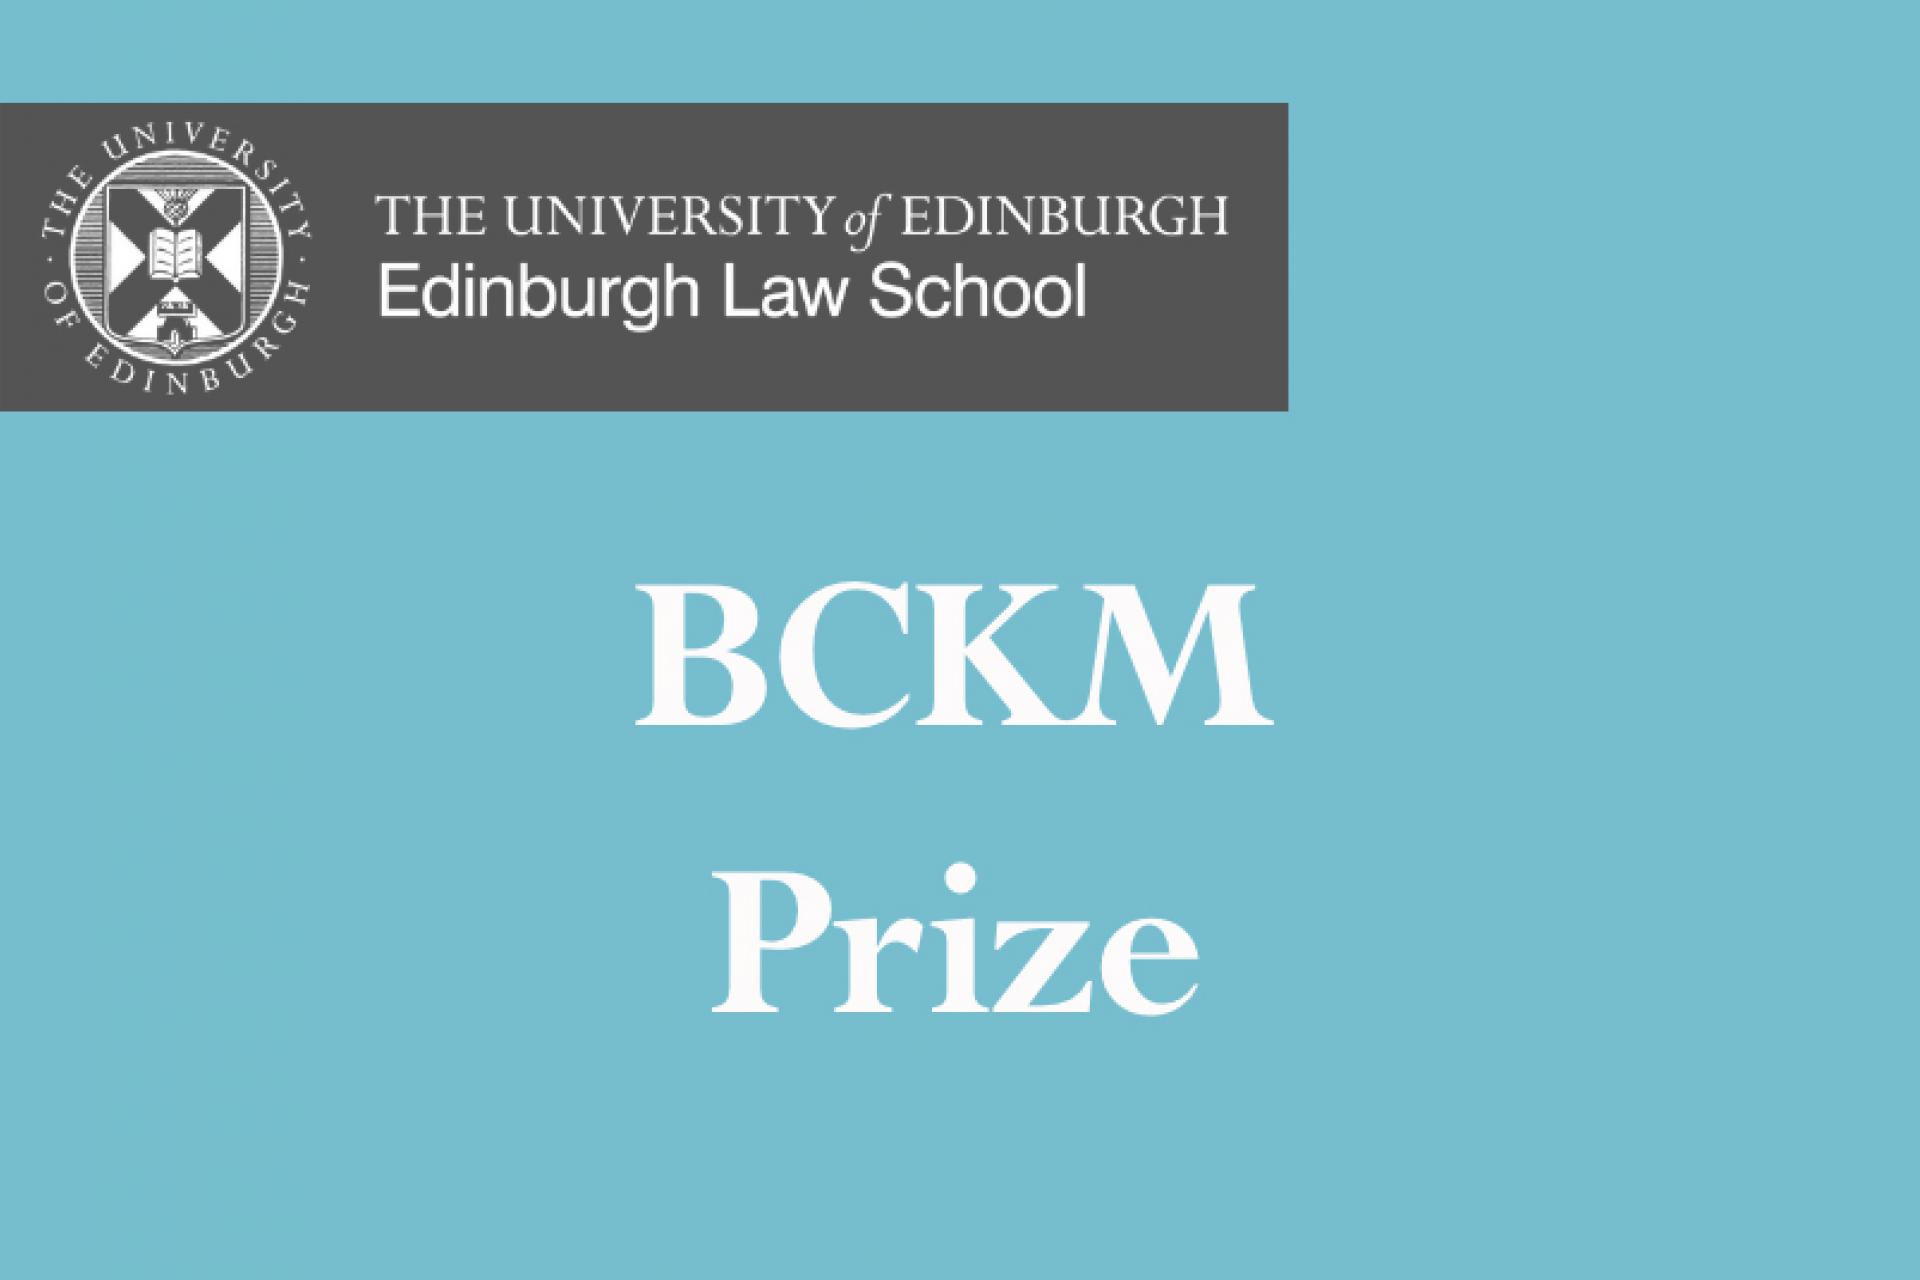 BCKM Prize